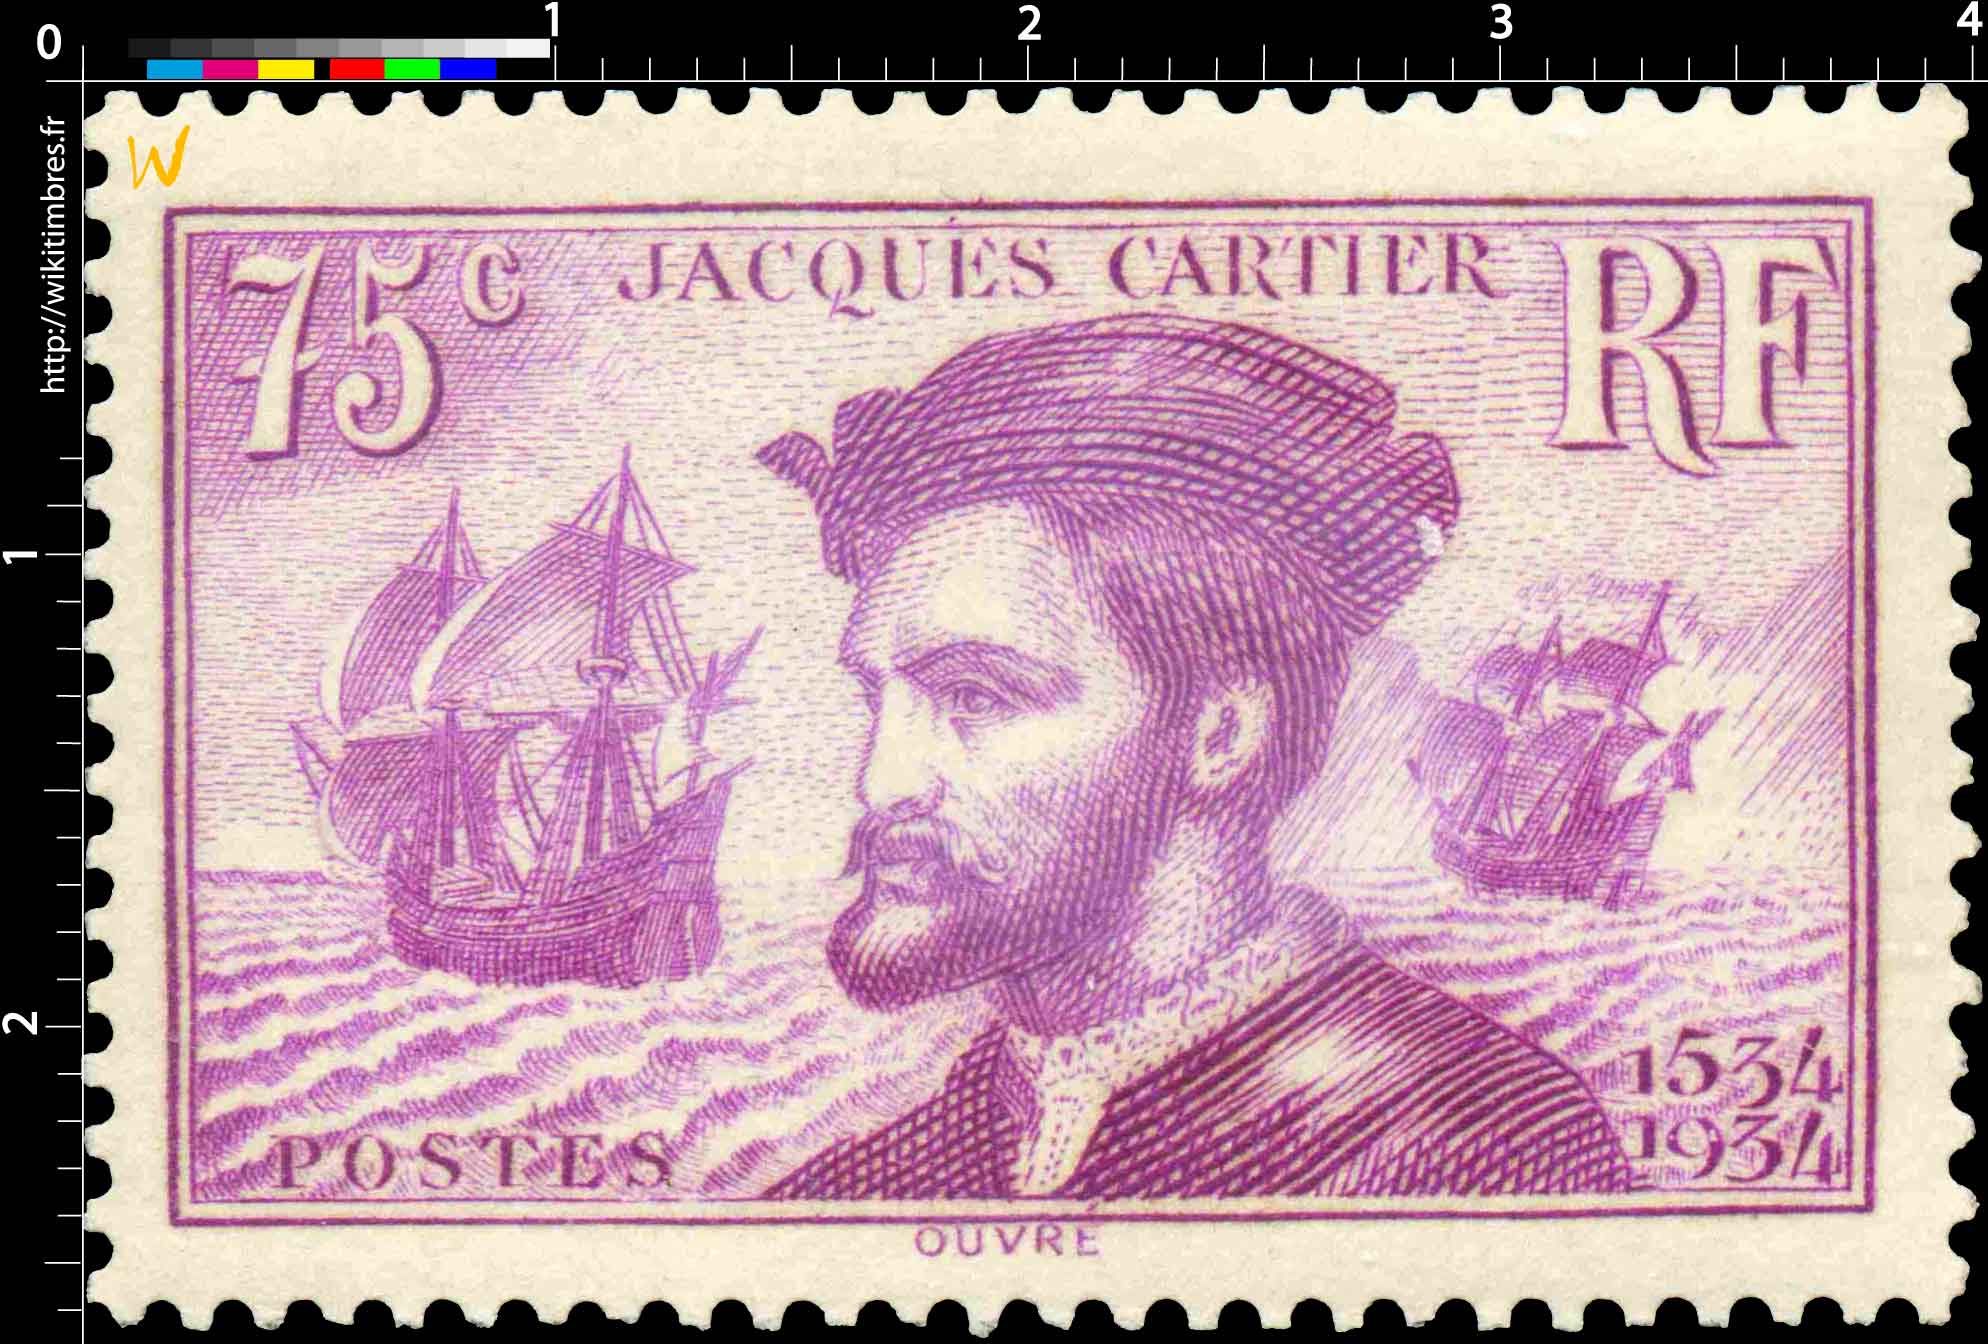 JACQUES CARTIER 1534-1934